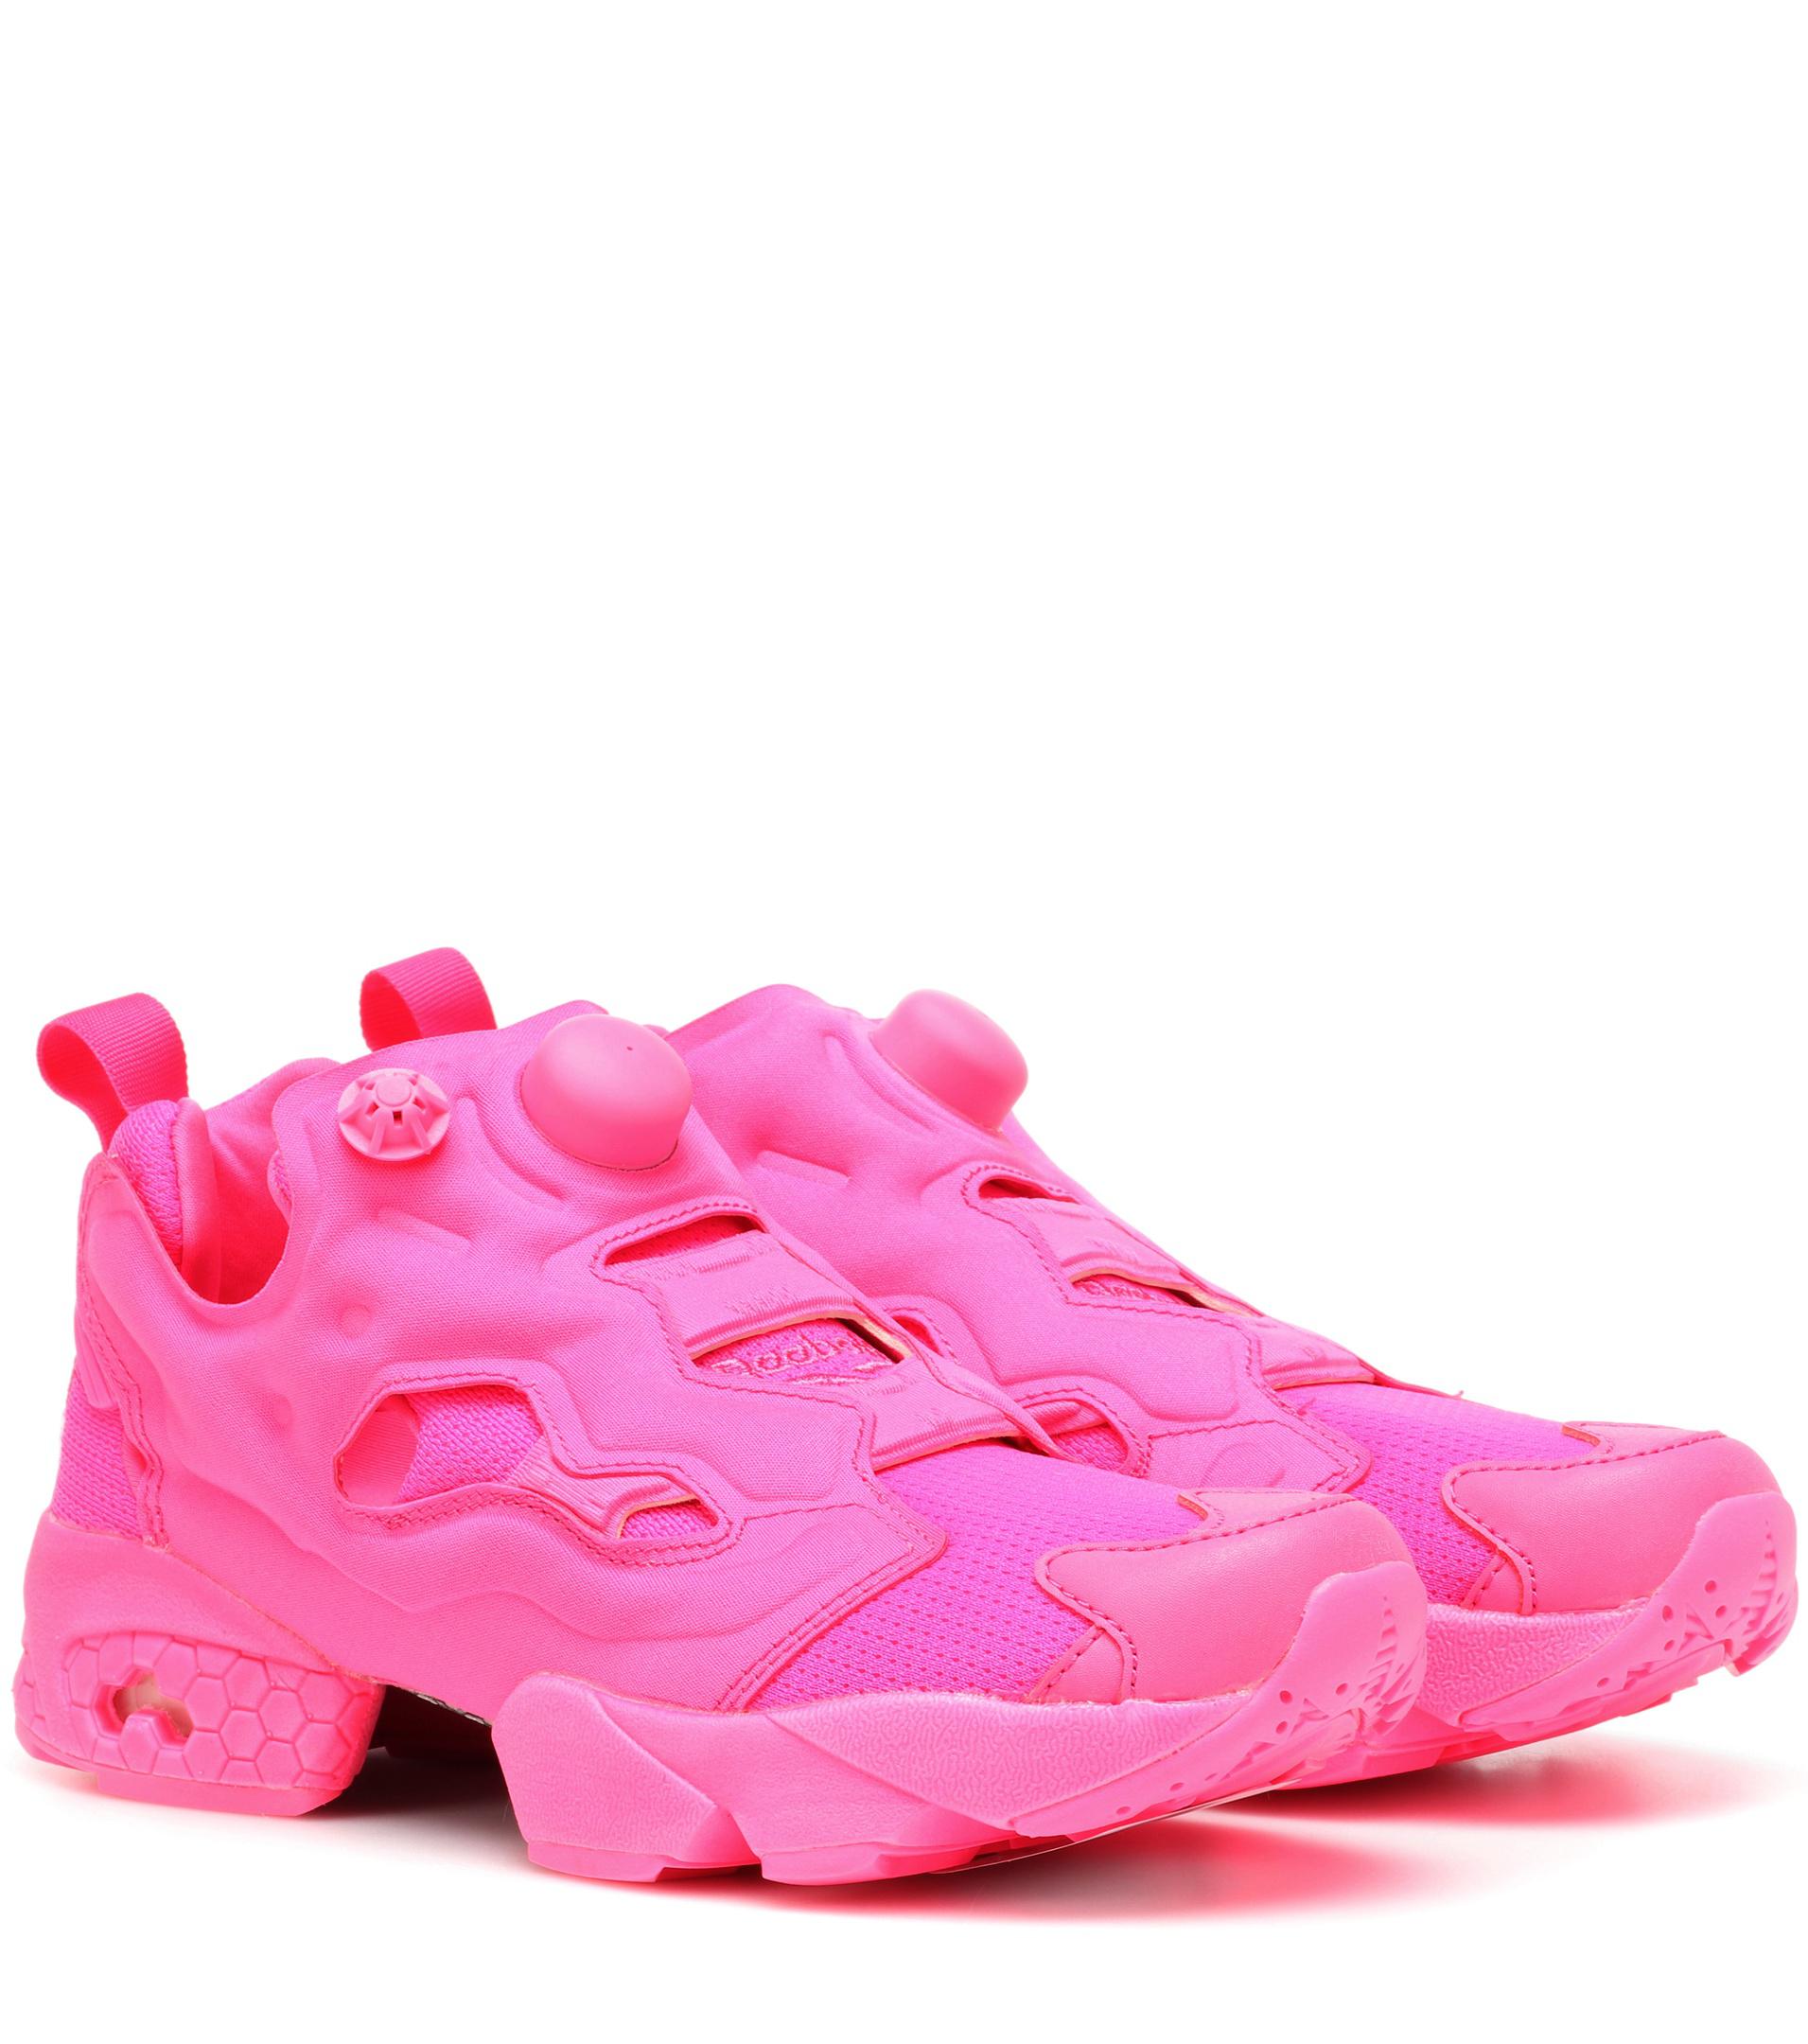 Instapump Fury Sneakers - Pink 